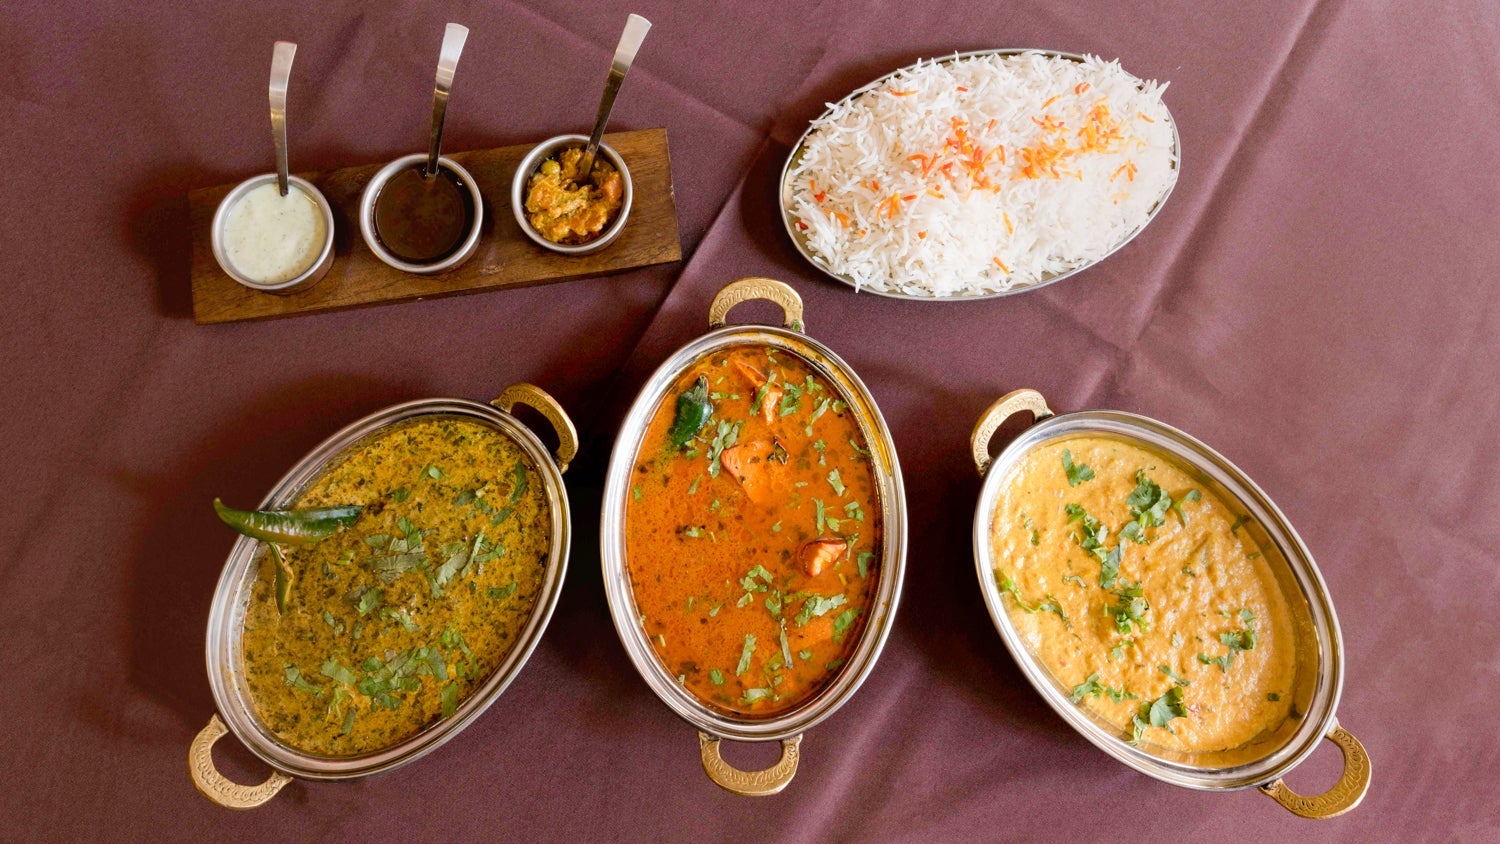 Indian Diner